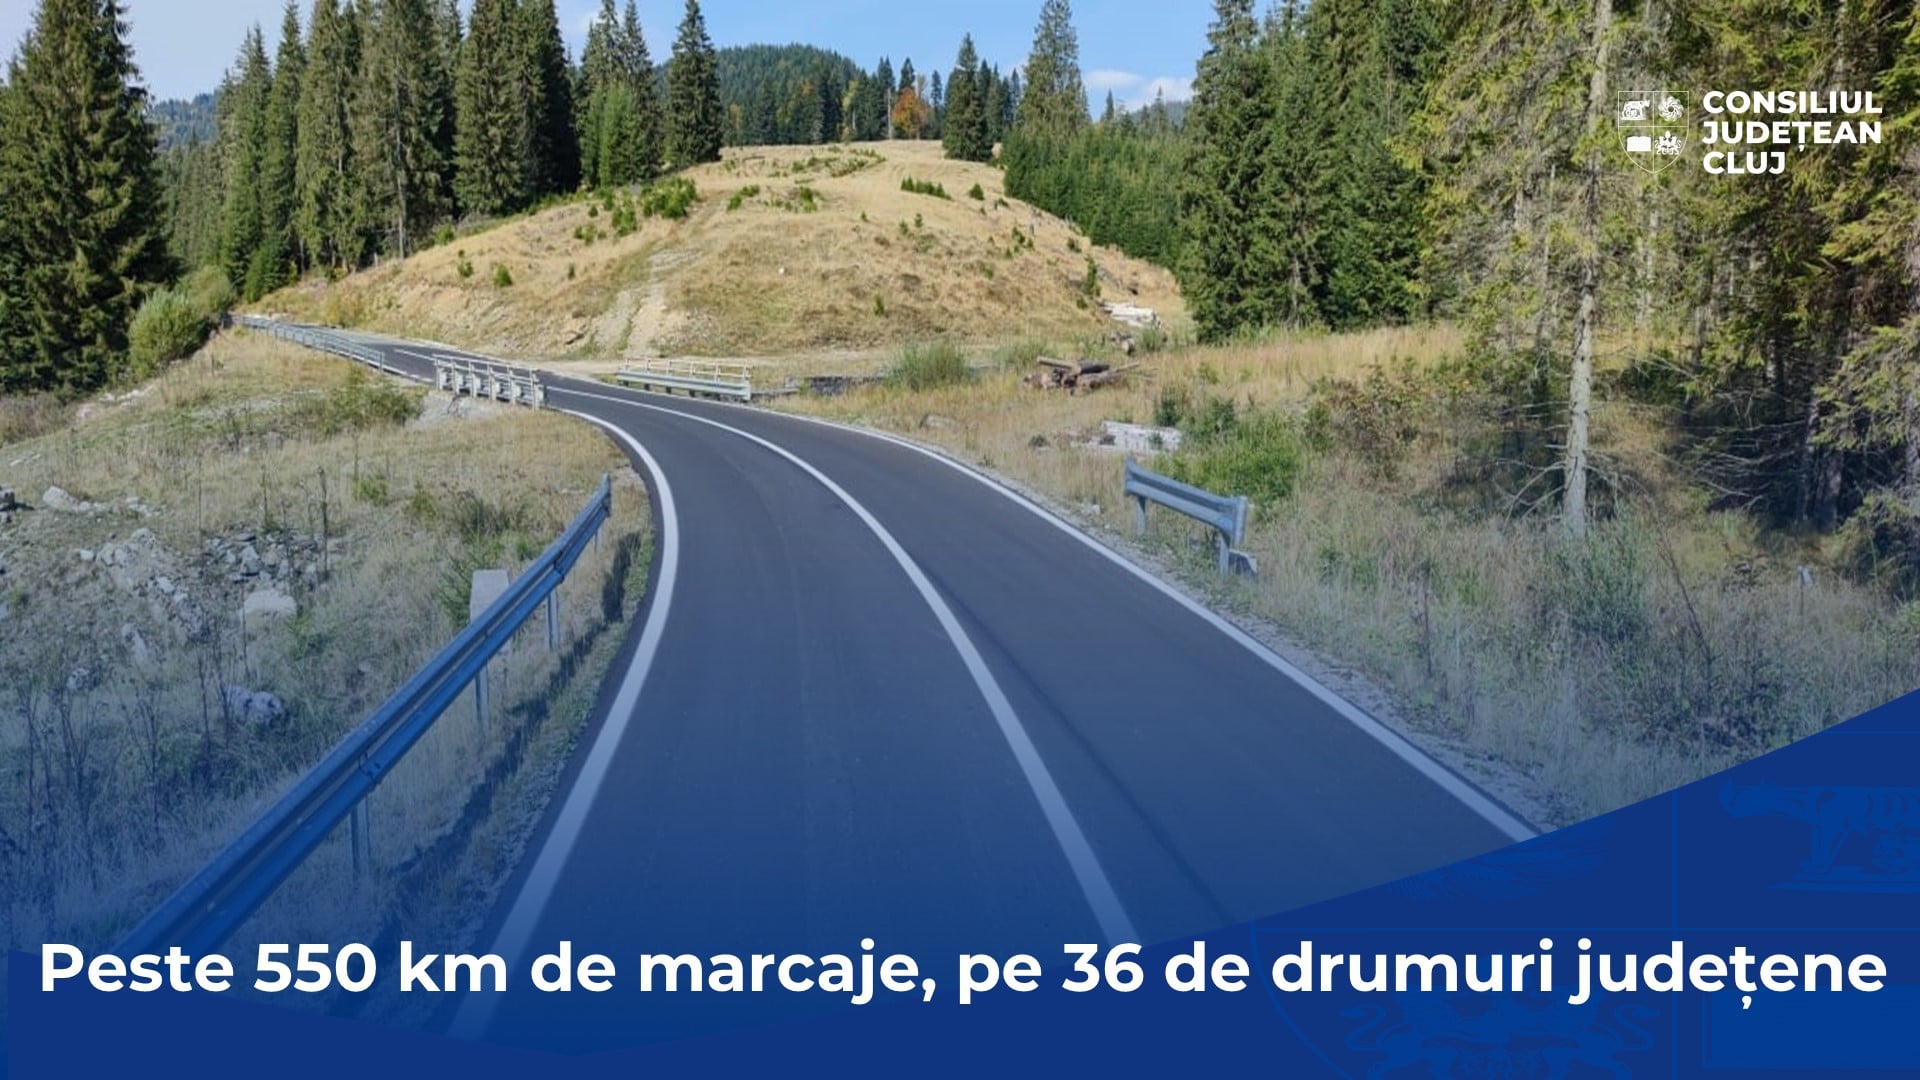 Peste 550 de km de marcaje rutiere pe drumurile judetene., Consiliul Judetean informeaza cetatenii-peste 550 de km de marcaje rutiere pe drumurile judetene., Stiri Turda - MinaDeStiri